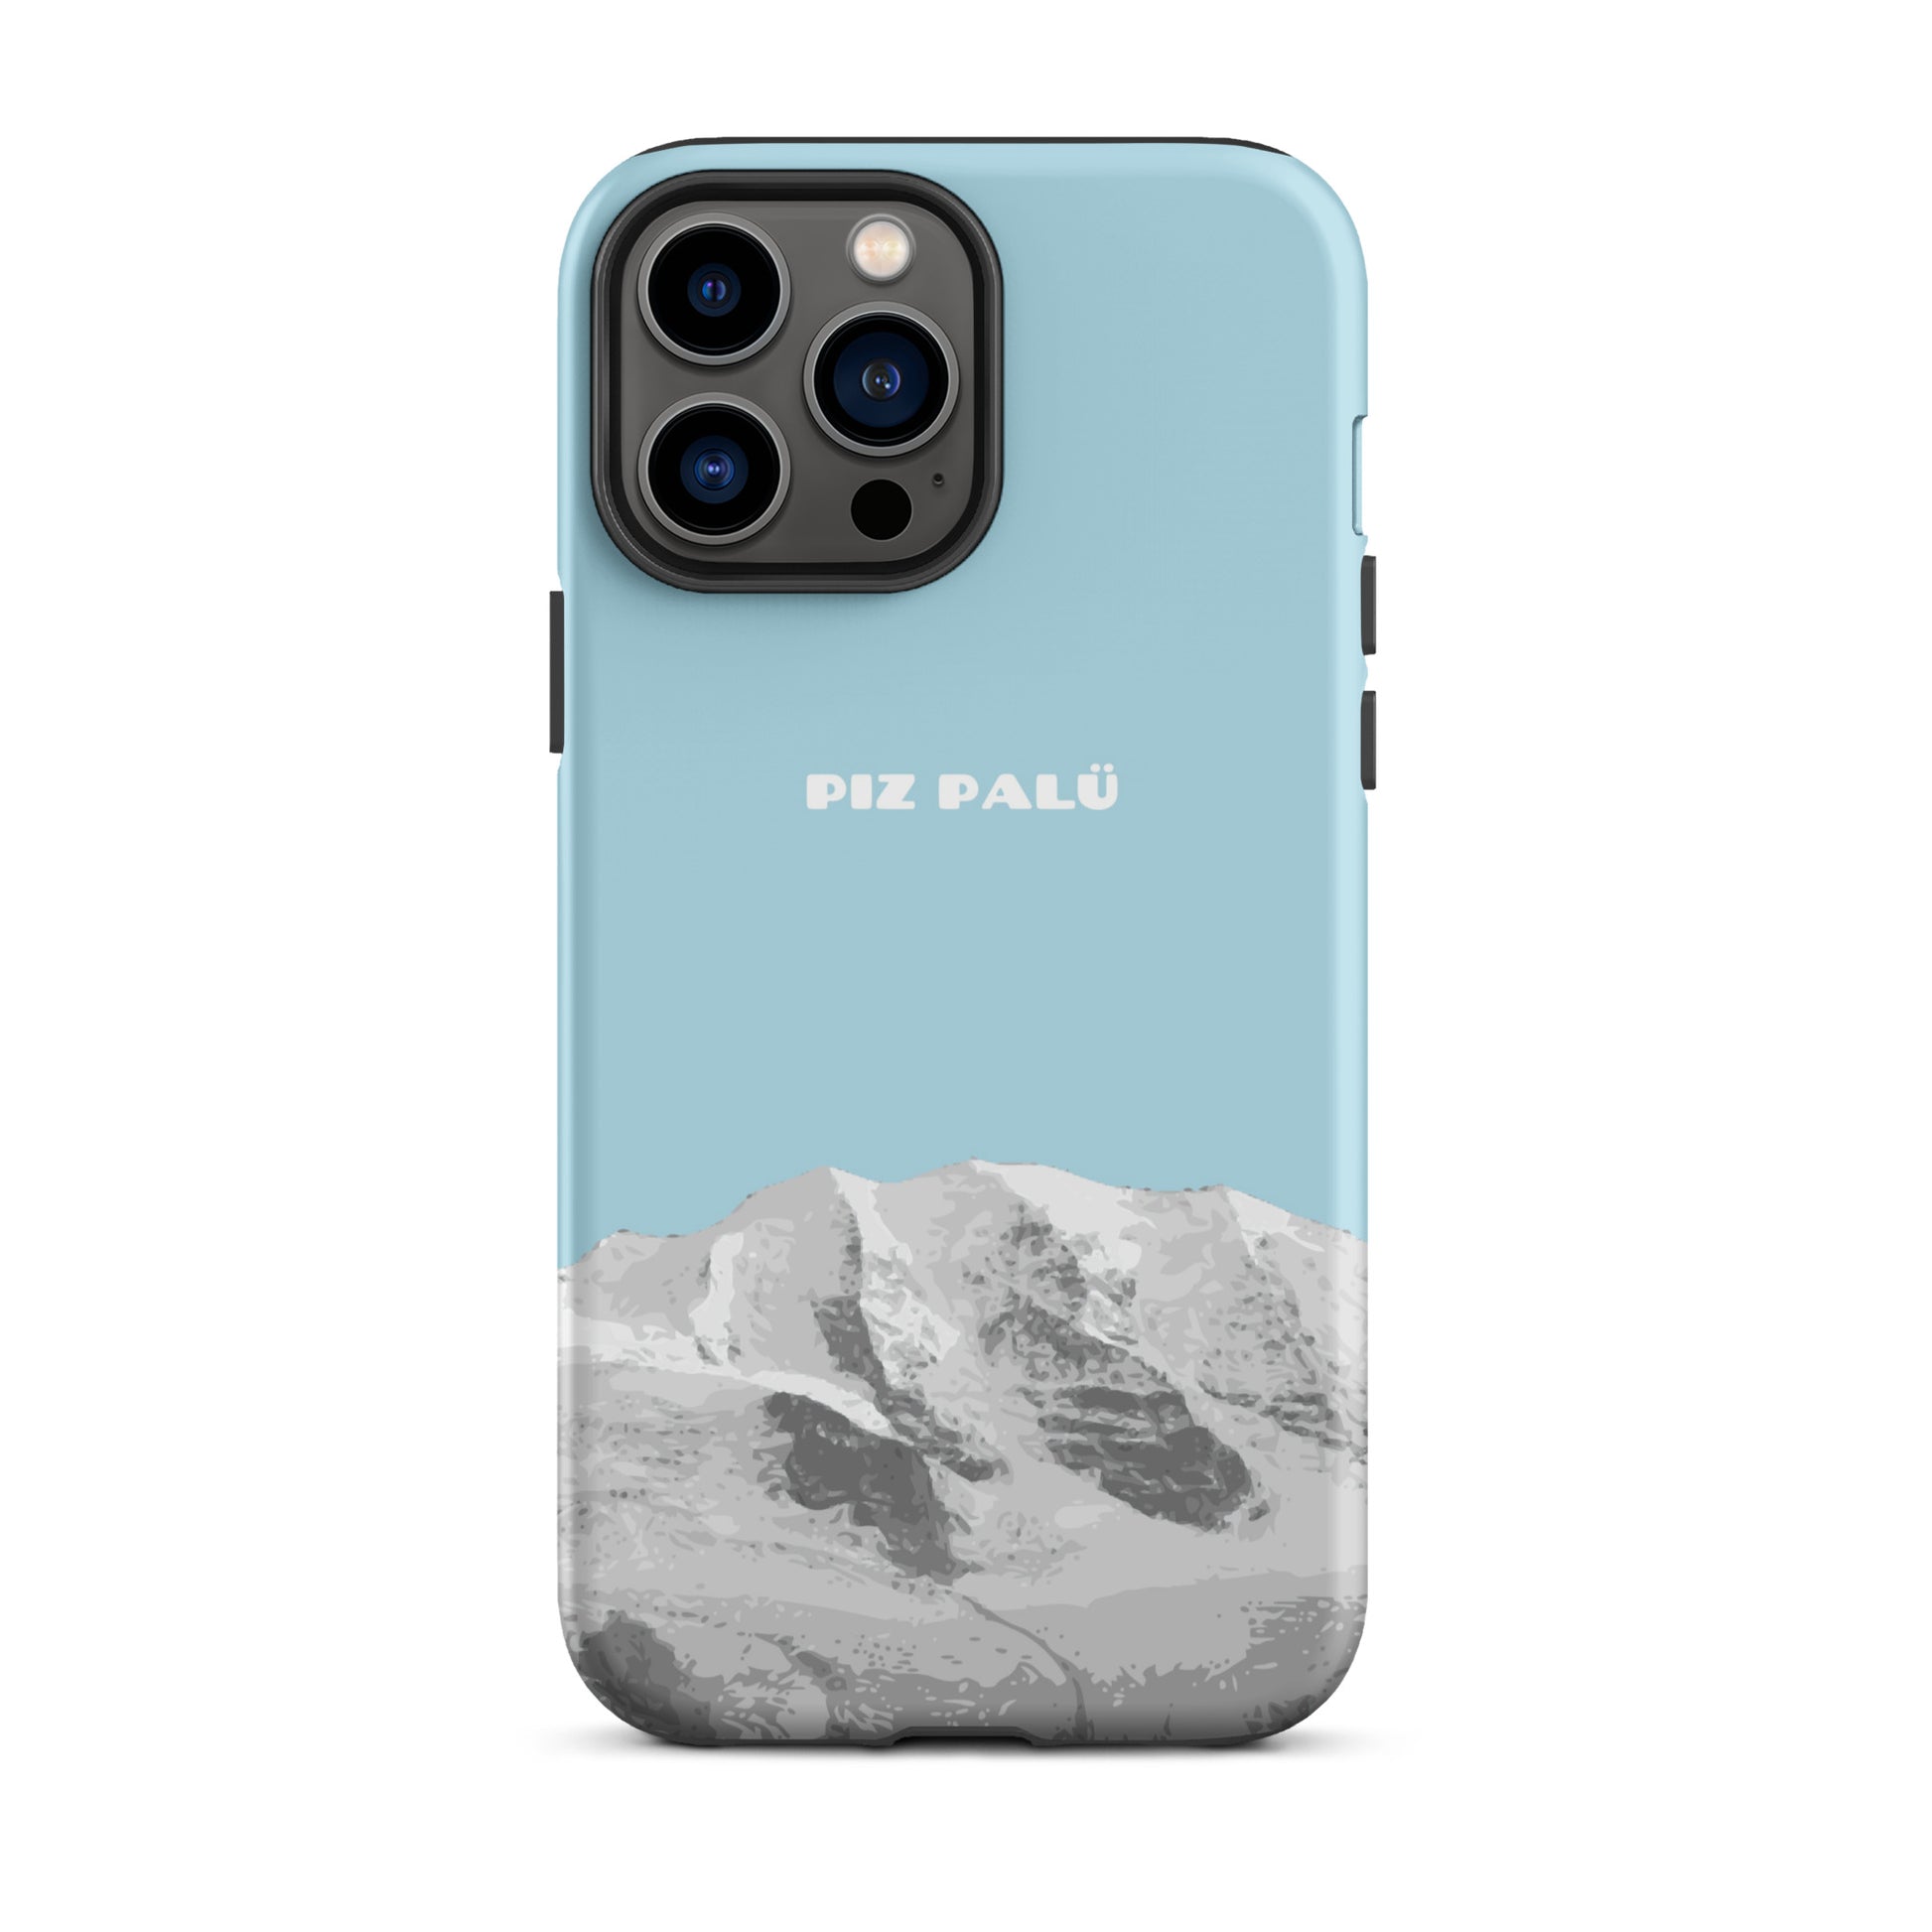 Hülle für das iPhone 13 Pro Max von Apple in der Farbe Hellblau, dass den Piz Palü in Graubünden zeigt.